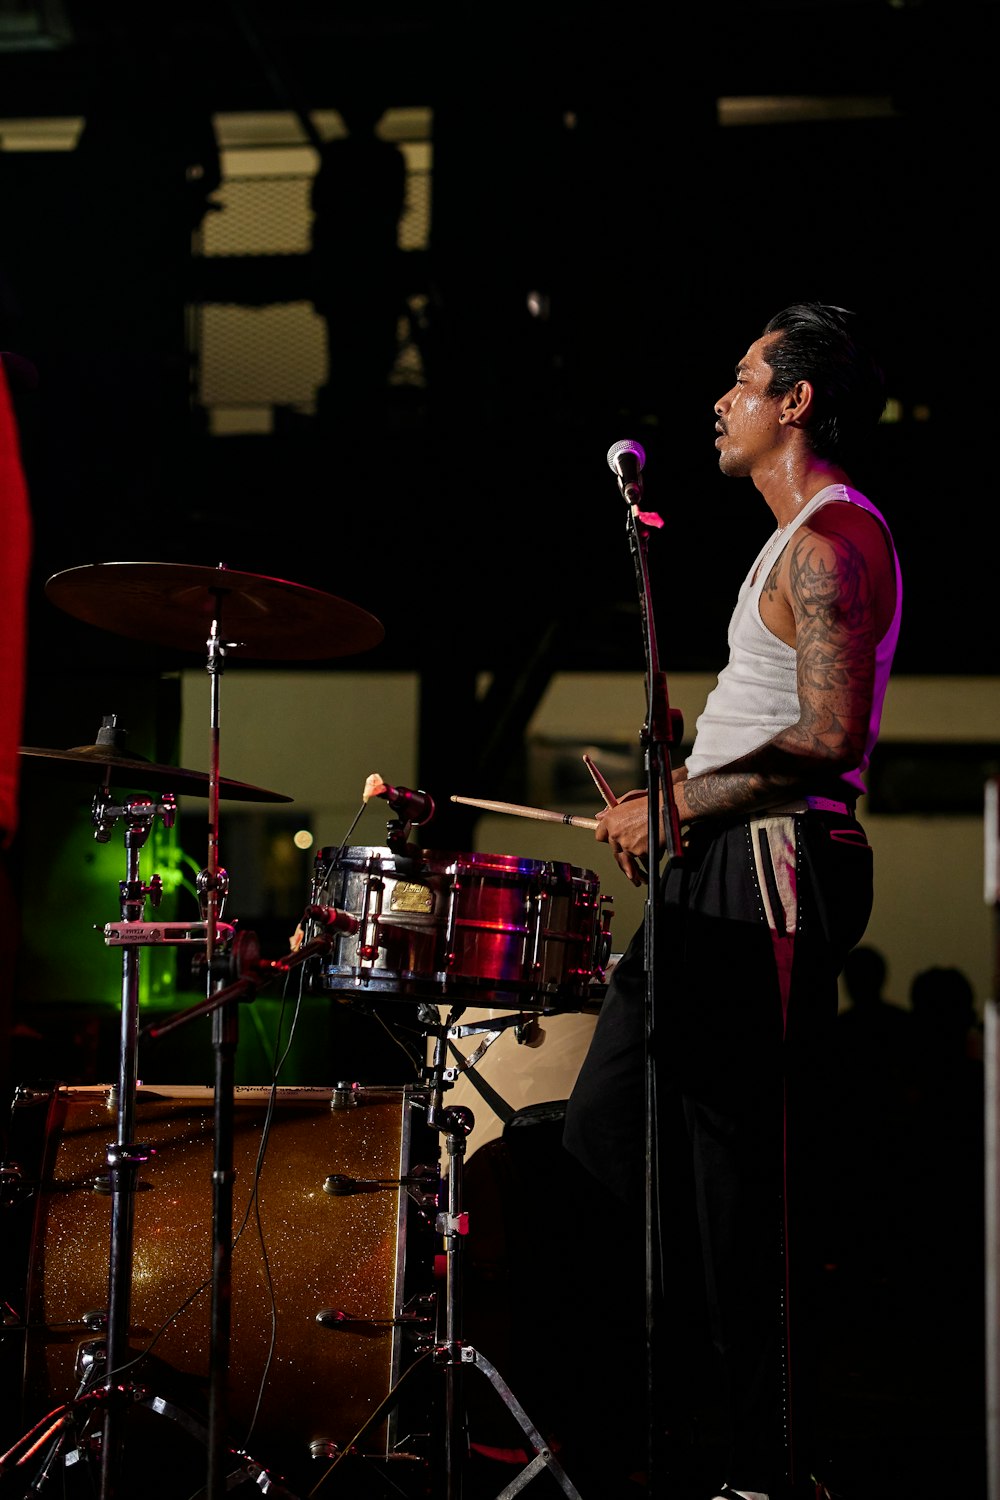 Un hombre con un tatuaje en el brazo tocando la batería